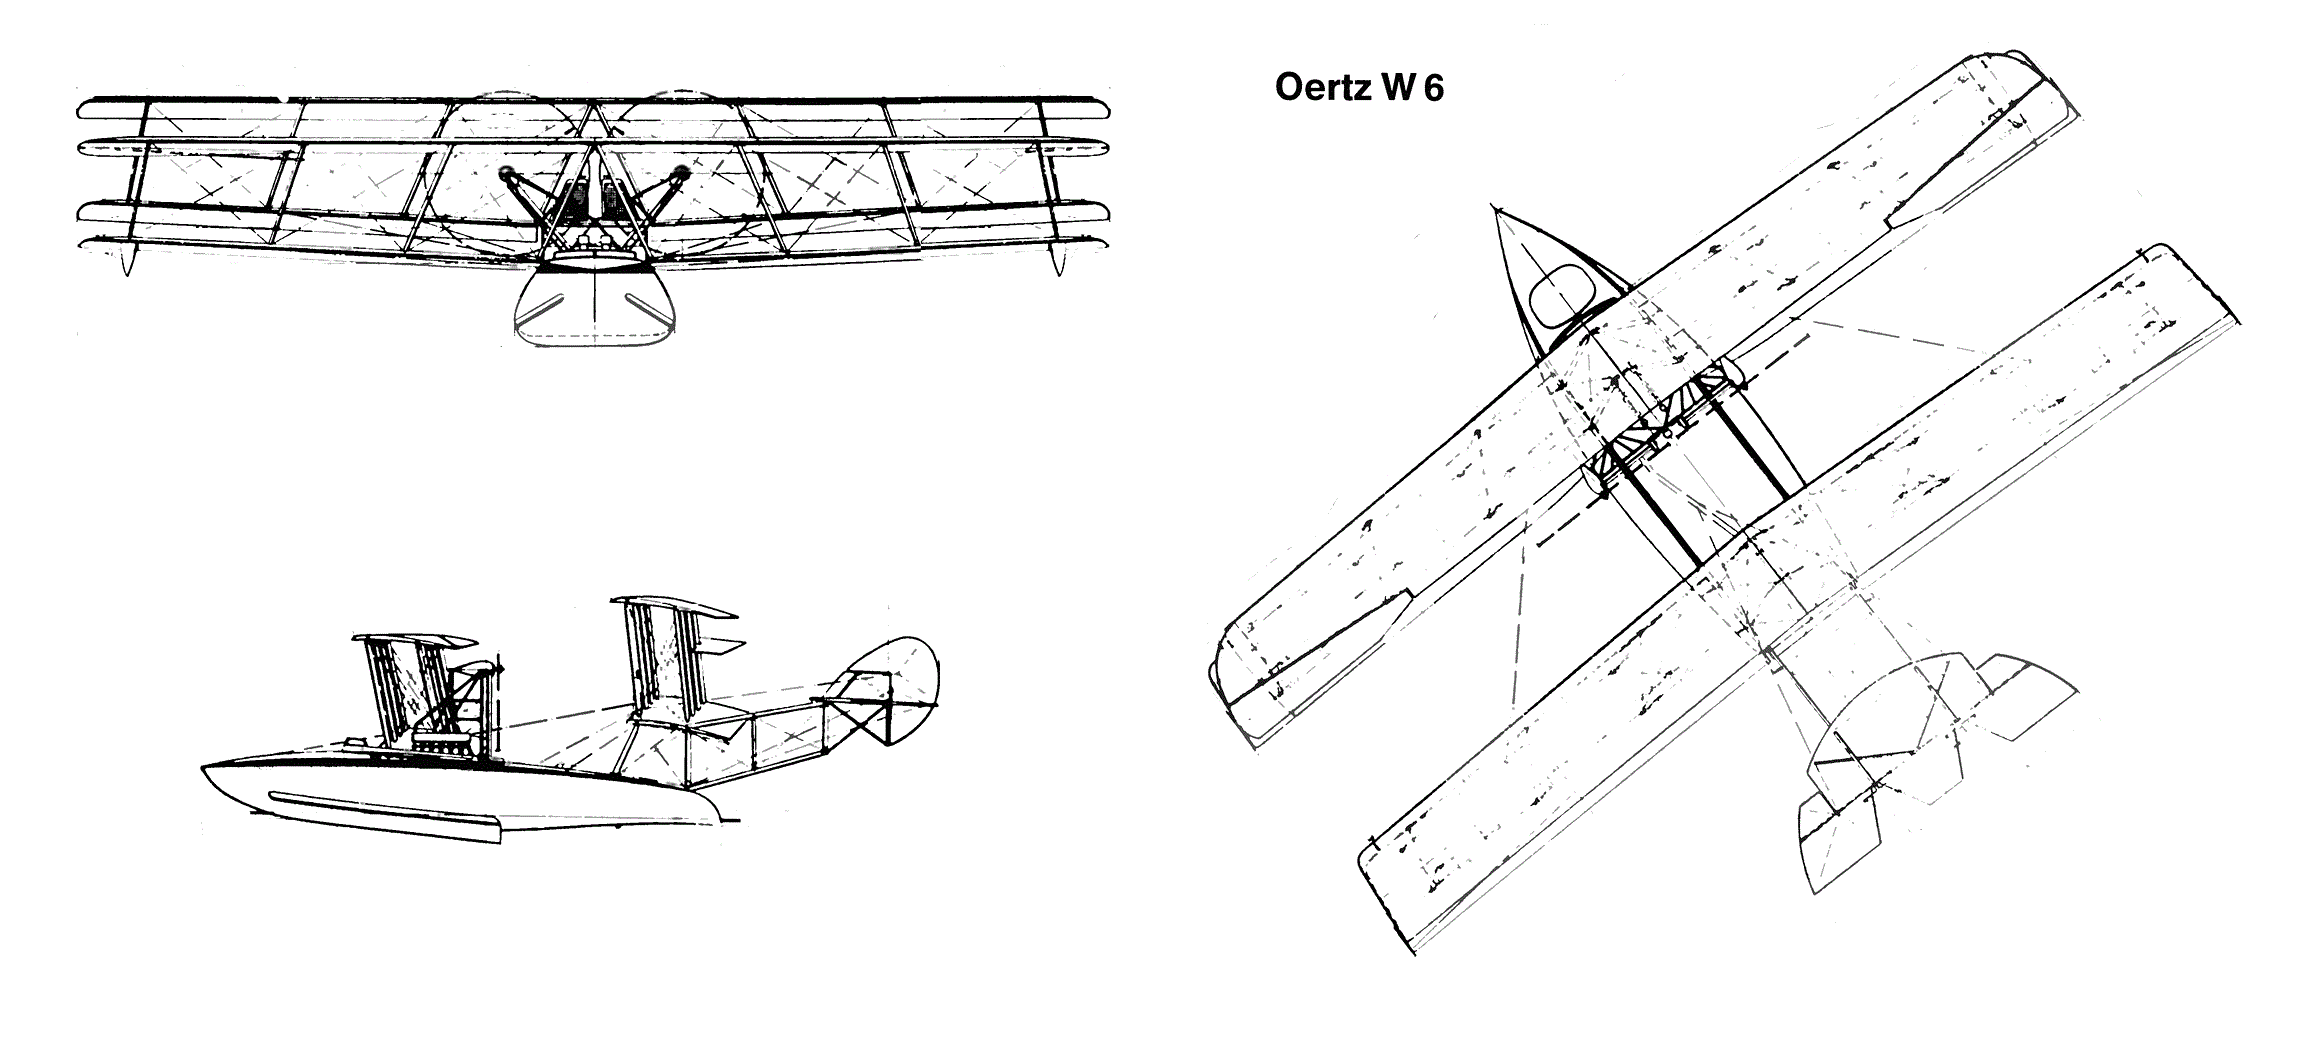 Oertz W6